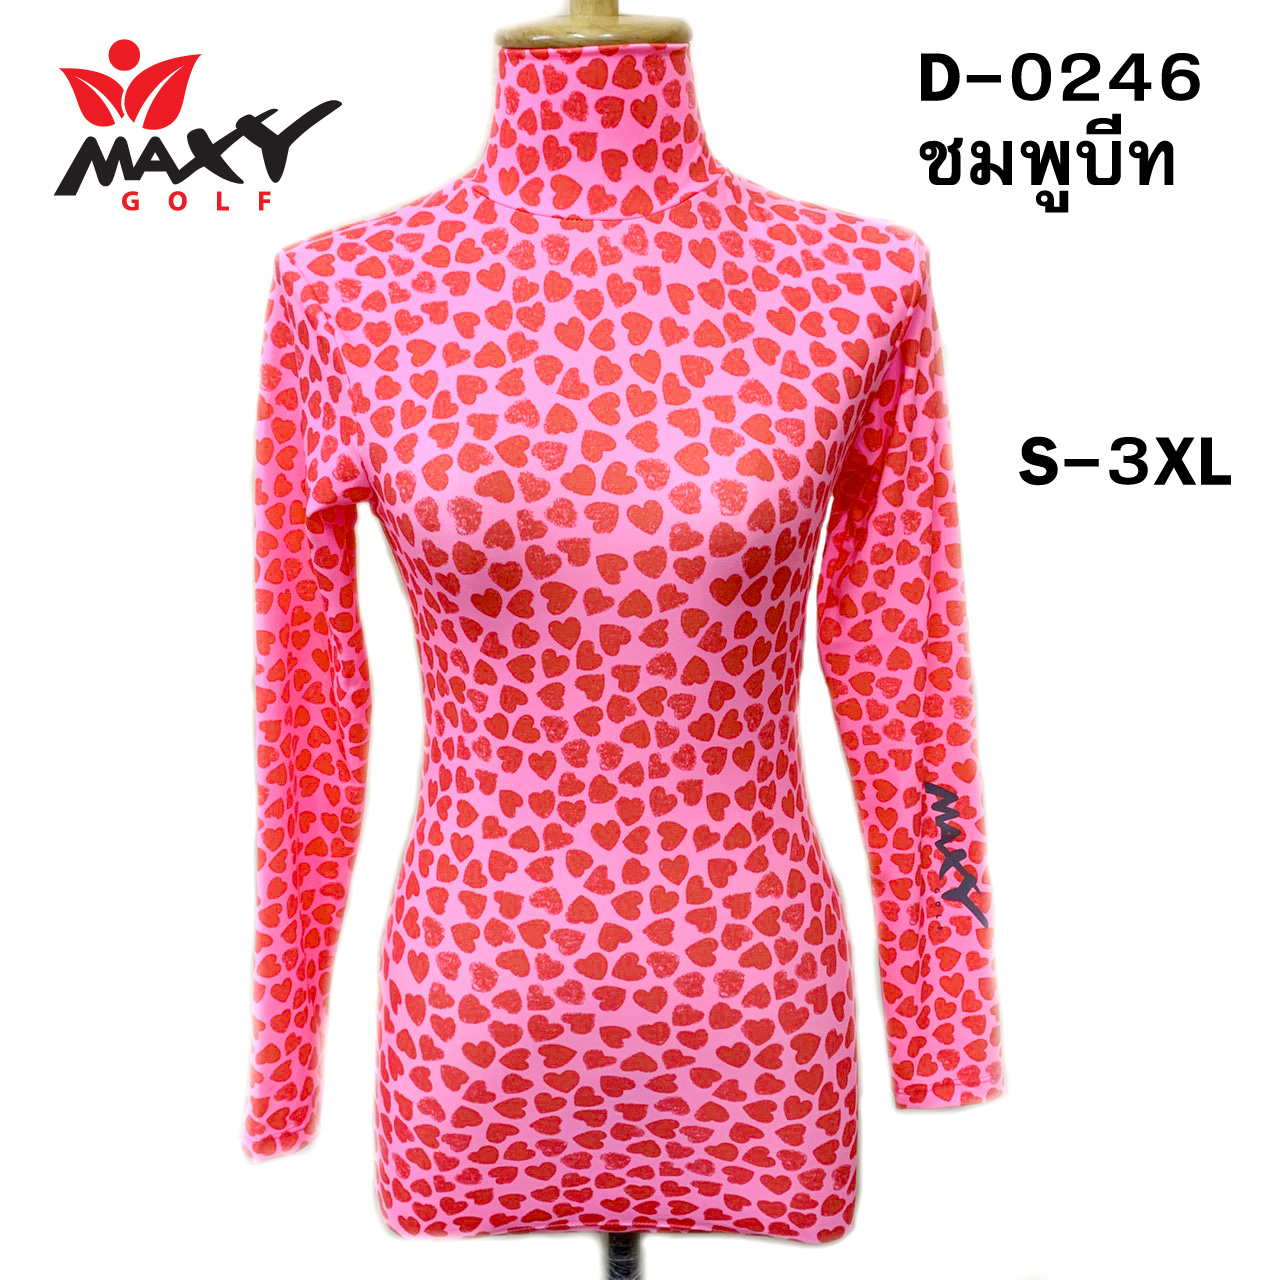 เสื้อบอดี้ฟิตกันแดด(คอเต่า)สำหรับผู้หญิง ยี่ห้อ MAXY GOLF (รหัส D-0246 ชมพูบีท)